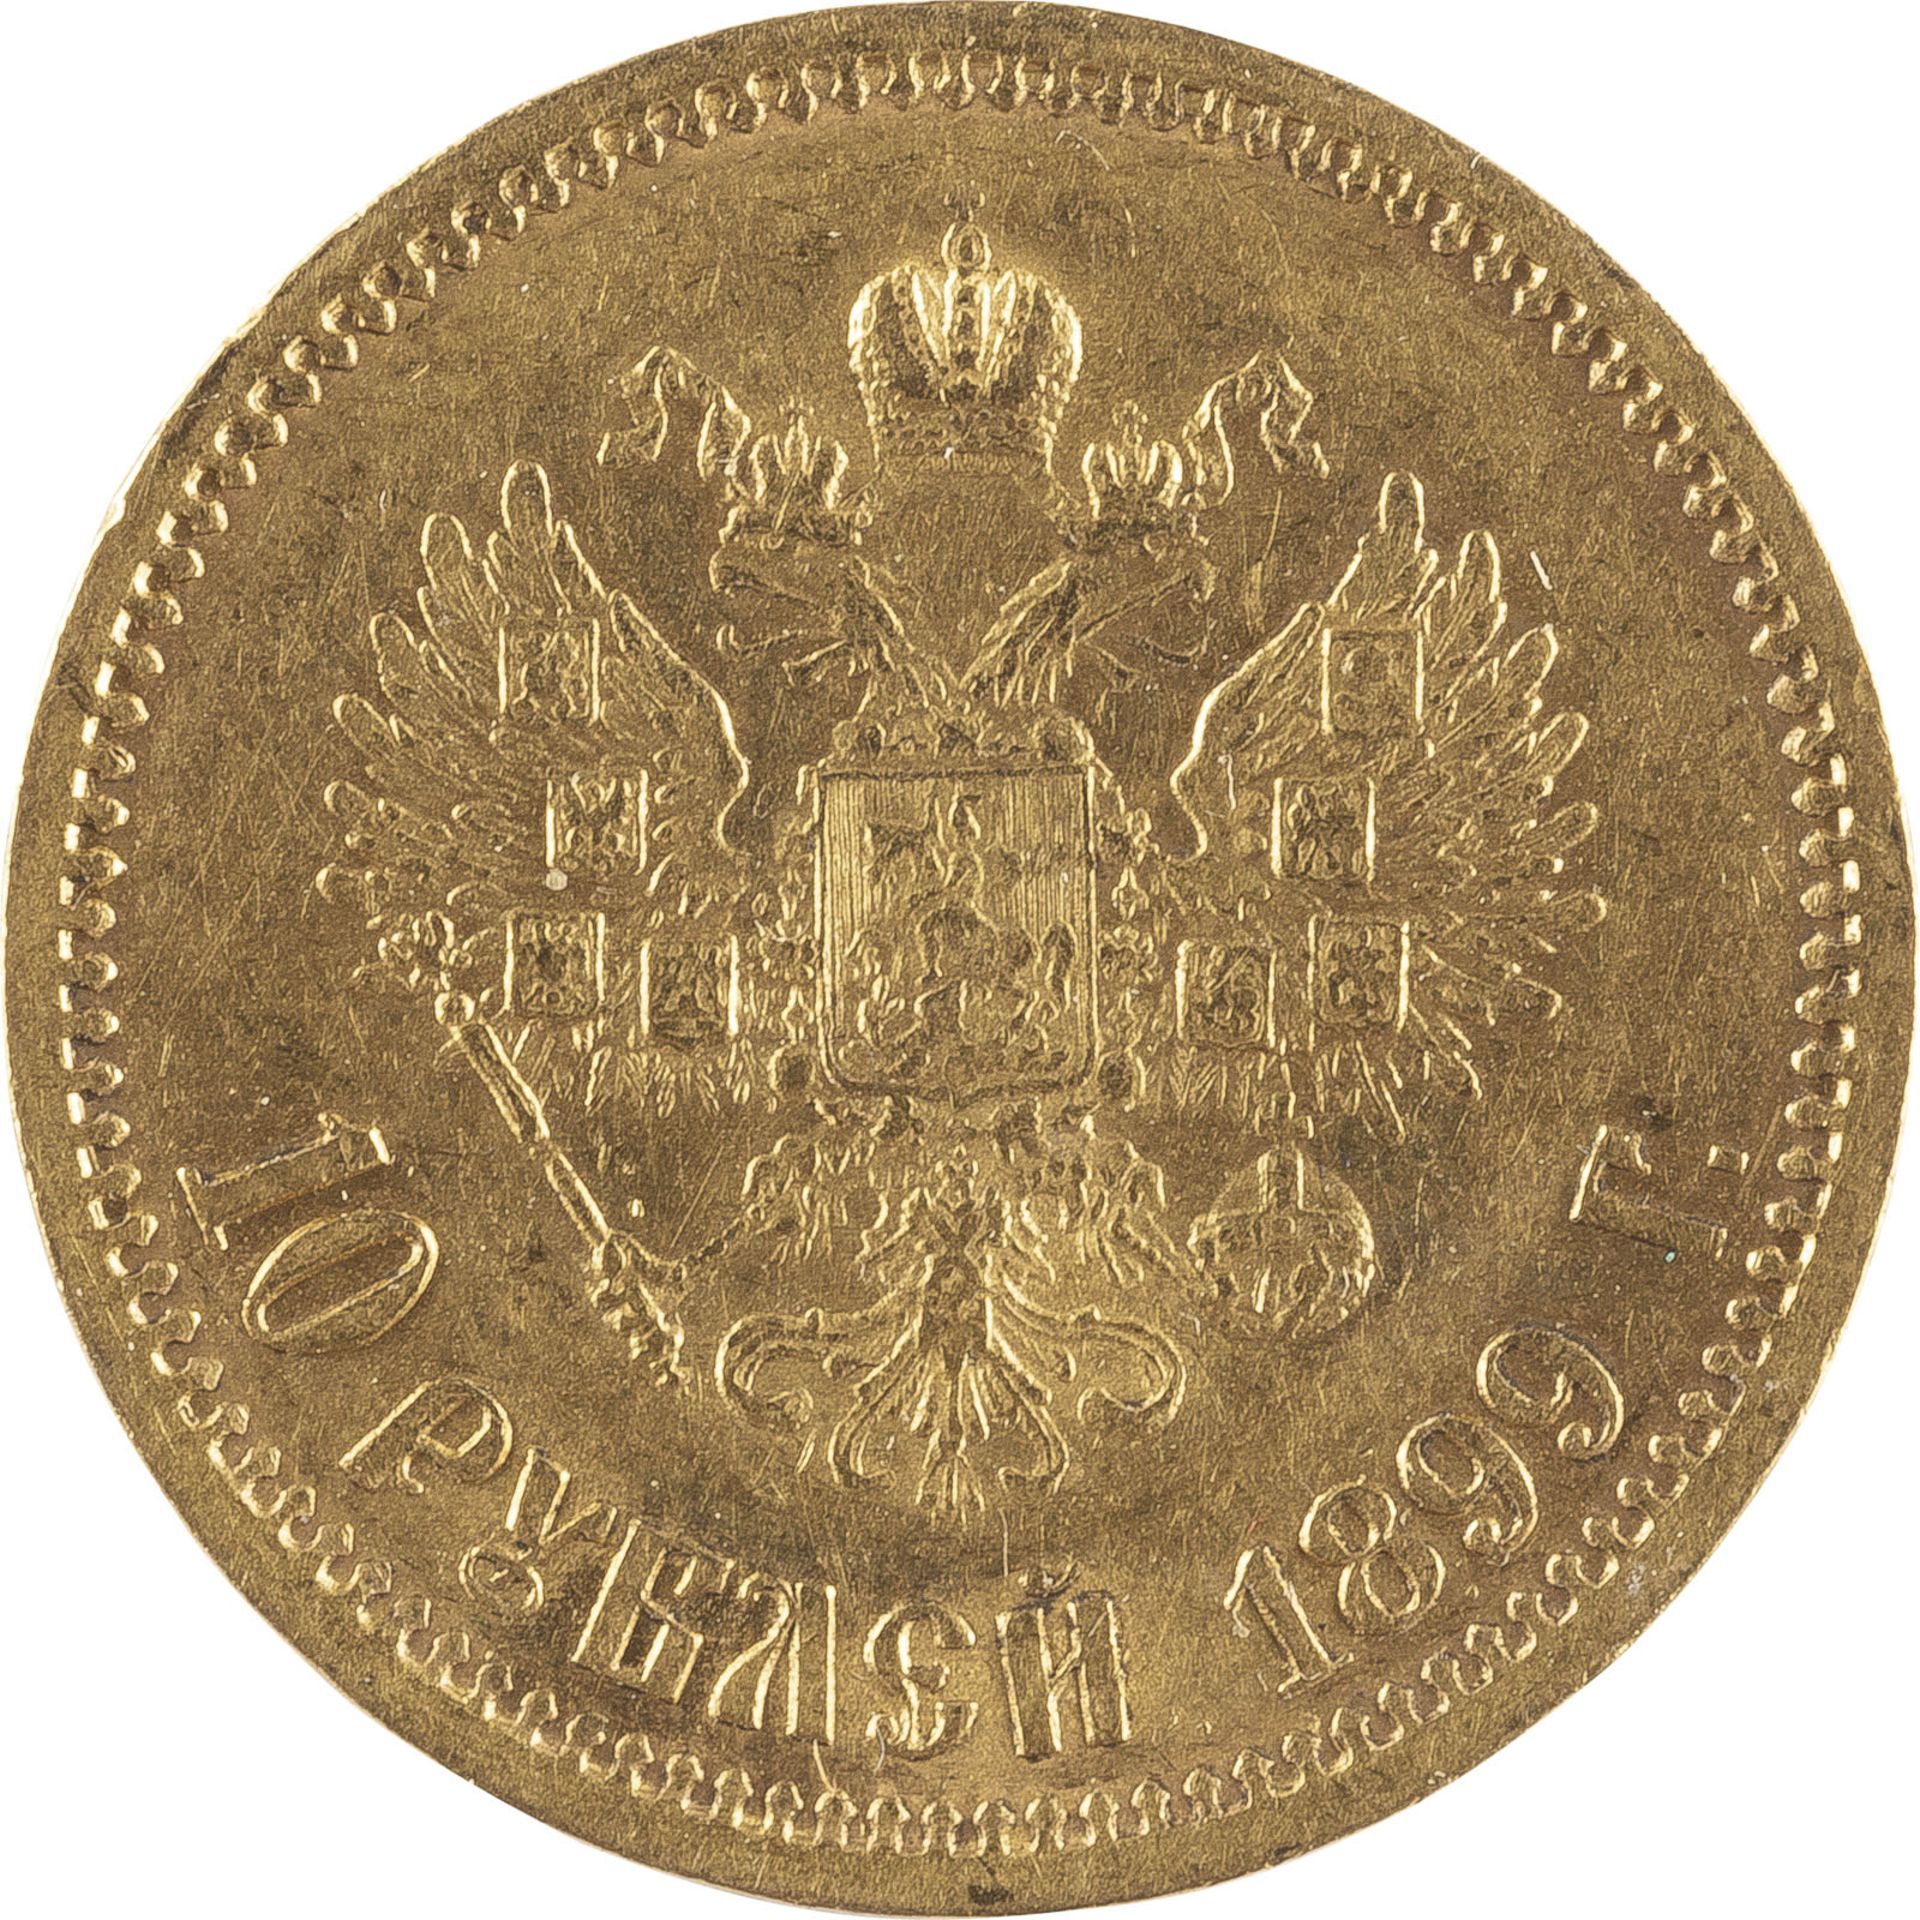 10 RUBEL GOLDMÜNZE MIT DEM PORTRÄT NIKOLAUS II. VON RUSSLAND - Image 4 of 4